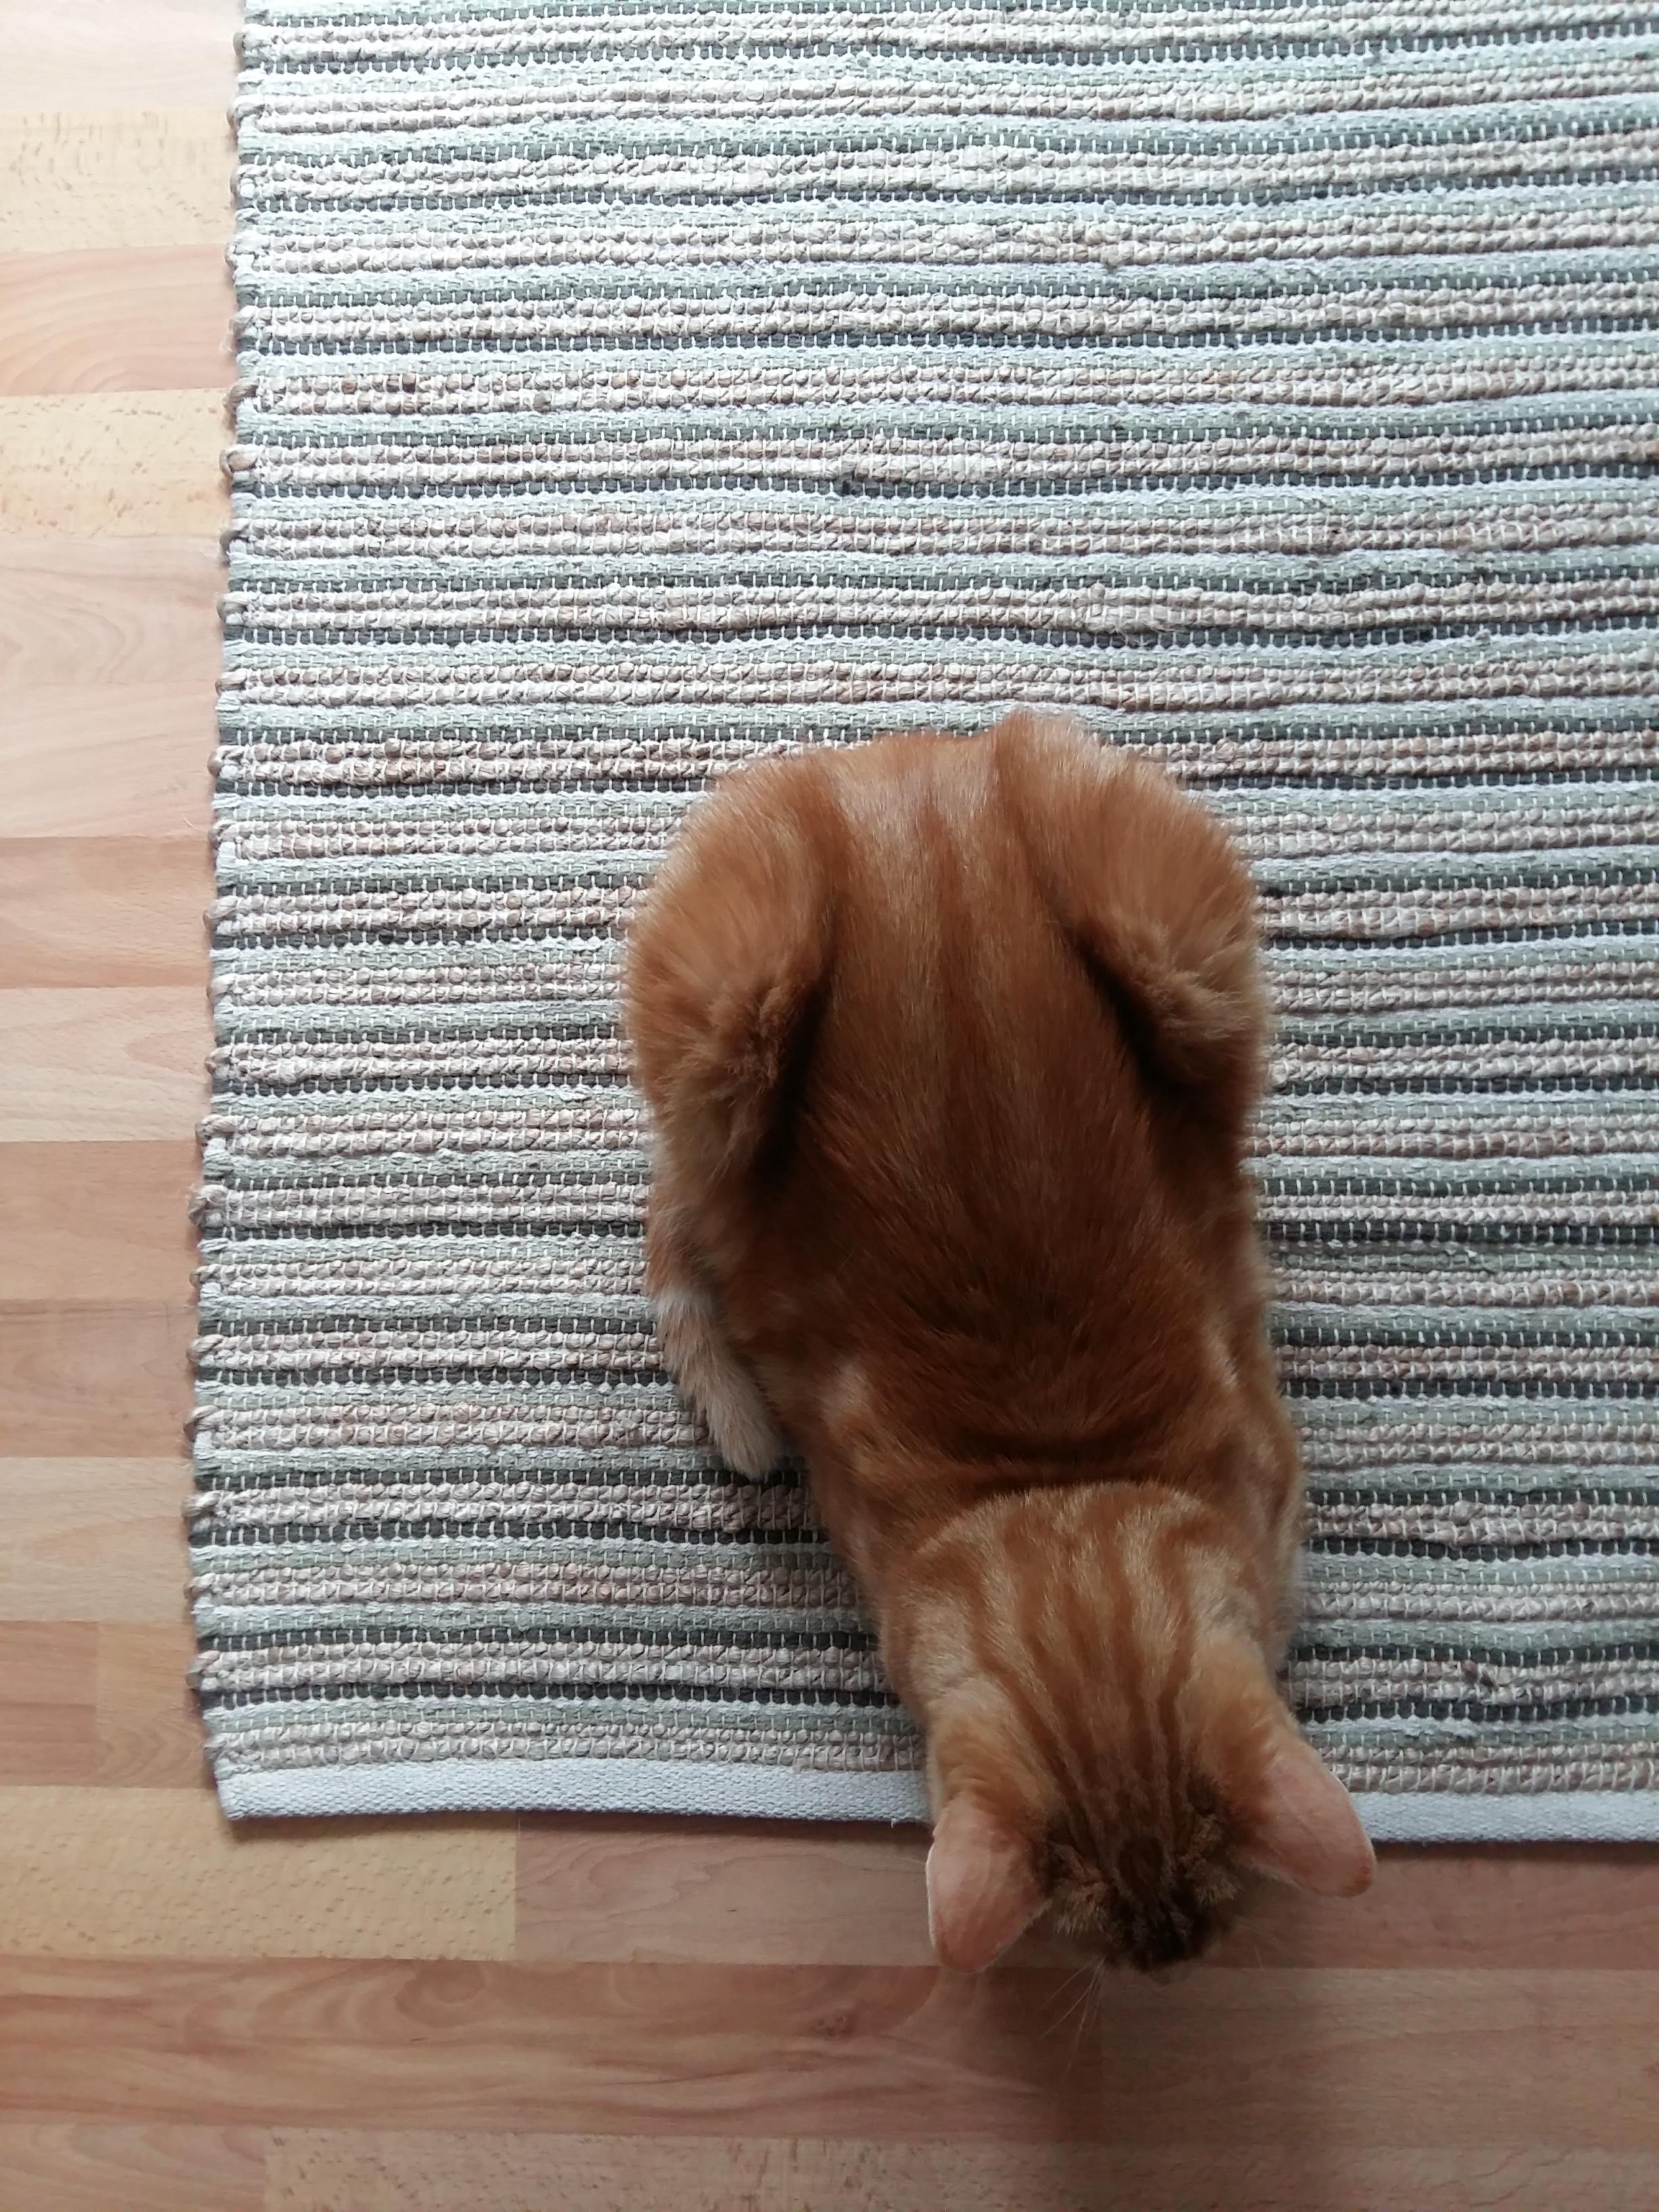 ich liebe meinen neuen #Teppich im Schlafzimmer! 
#soestrenegrene #cat